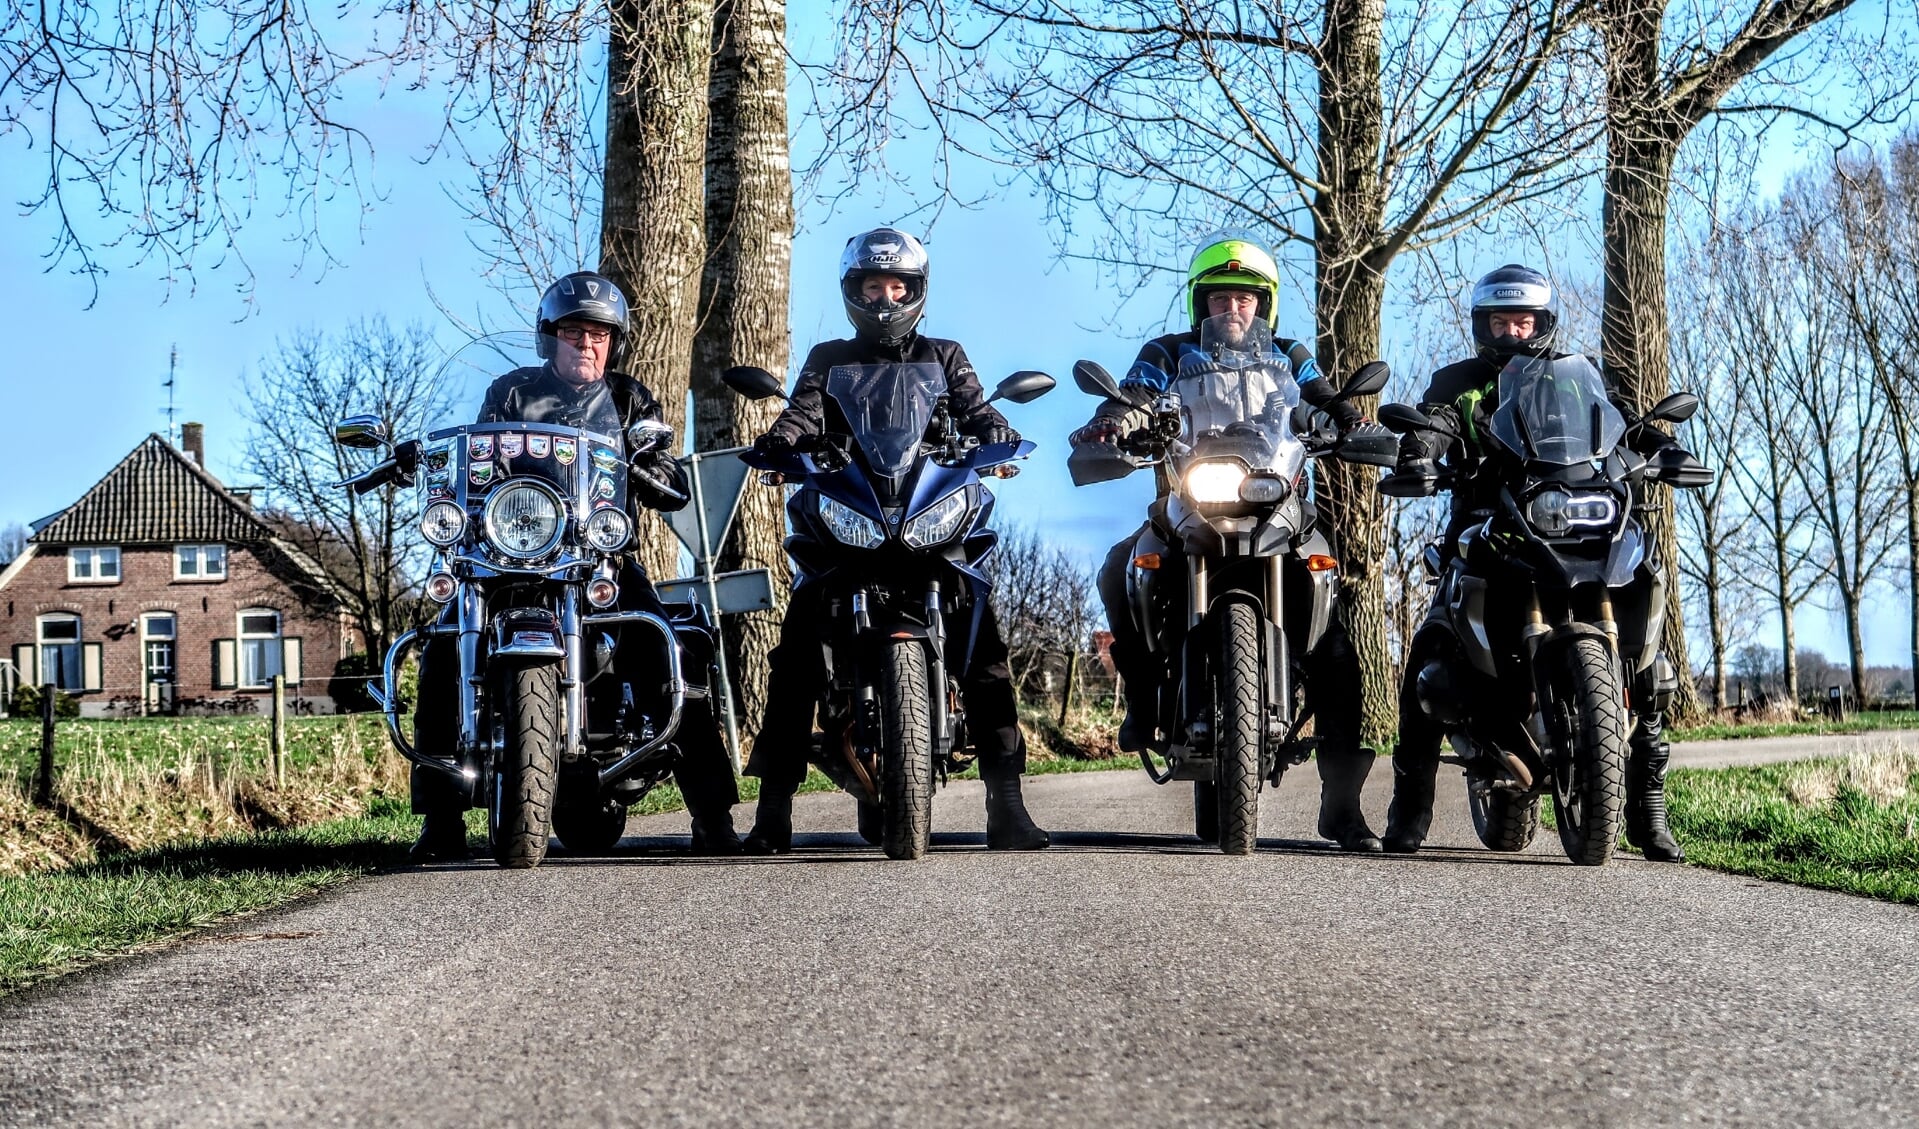 De bestuursleden van Keijenborgse motorclub KMC’95 stappen zelf ook maar wat graag op de motor. Meest links mede-oprichter Theo Stapelbroek. Foto: Luuk Stam